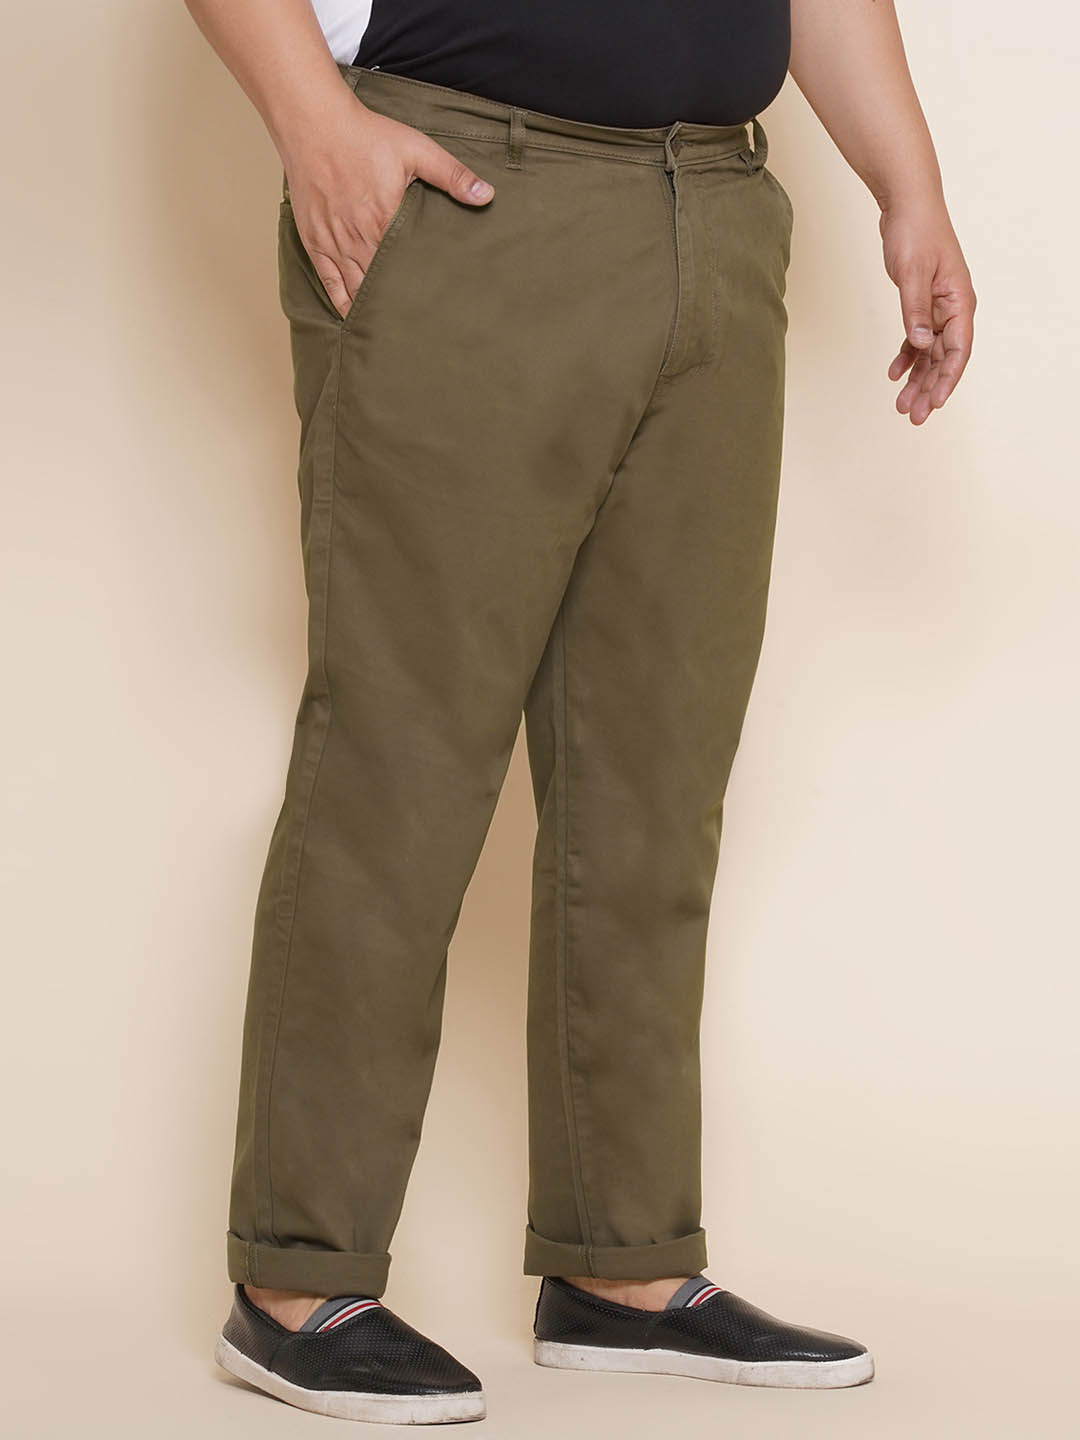 bottomwear/trousers/JPTR21013/jptr21013-3.jpg